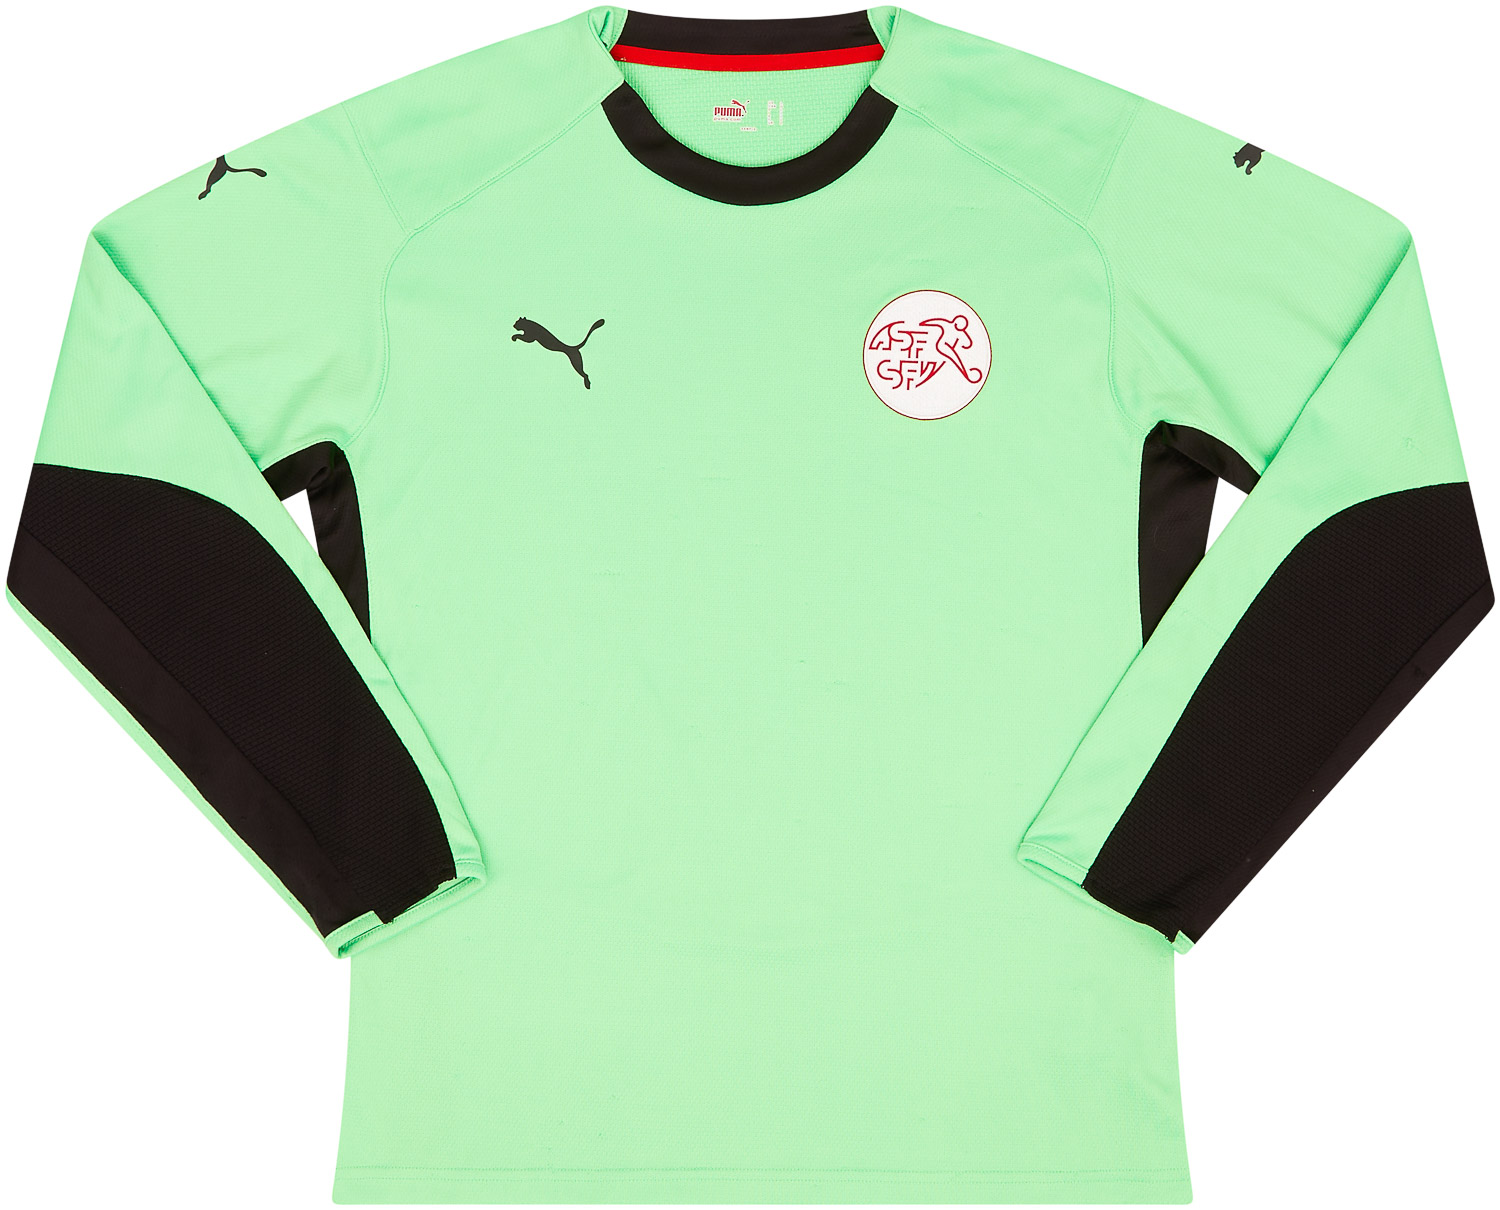 2010s Switzerland GK Shirt - 8/10 - ()